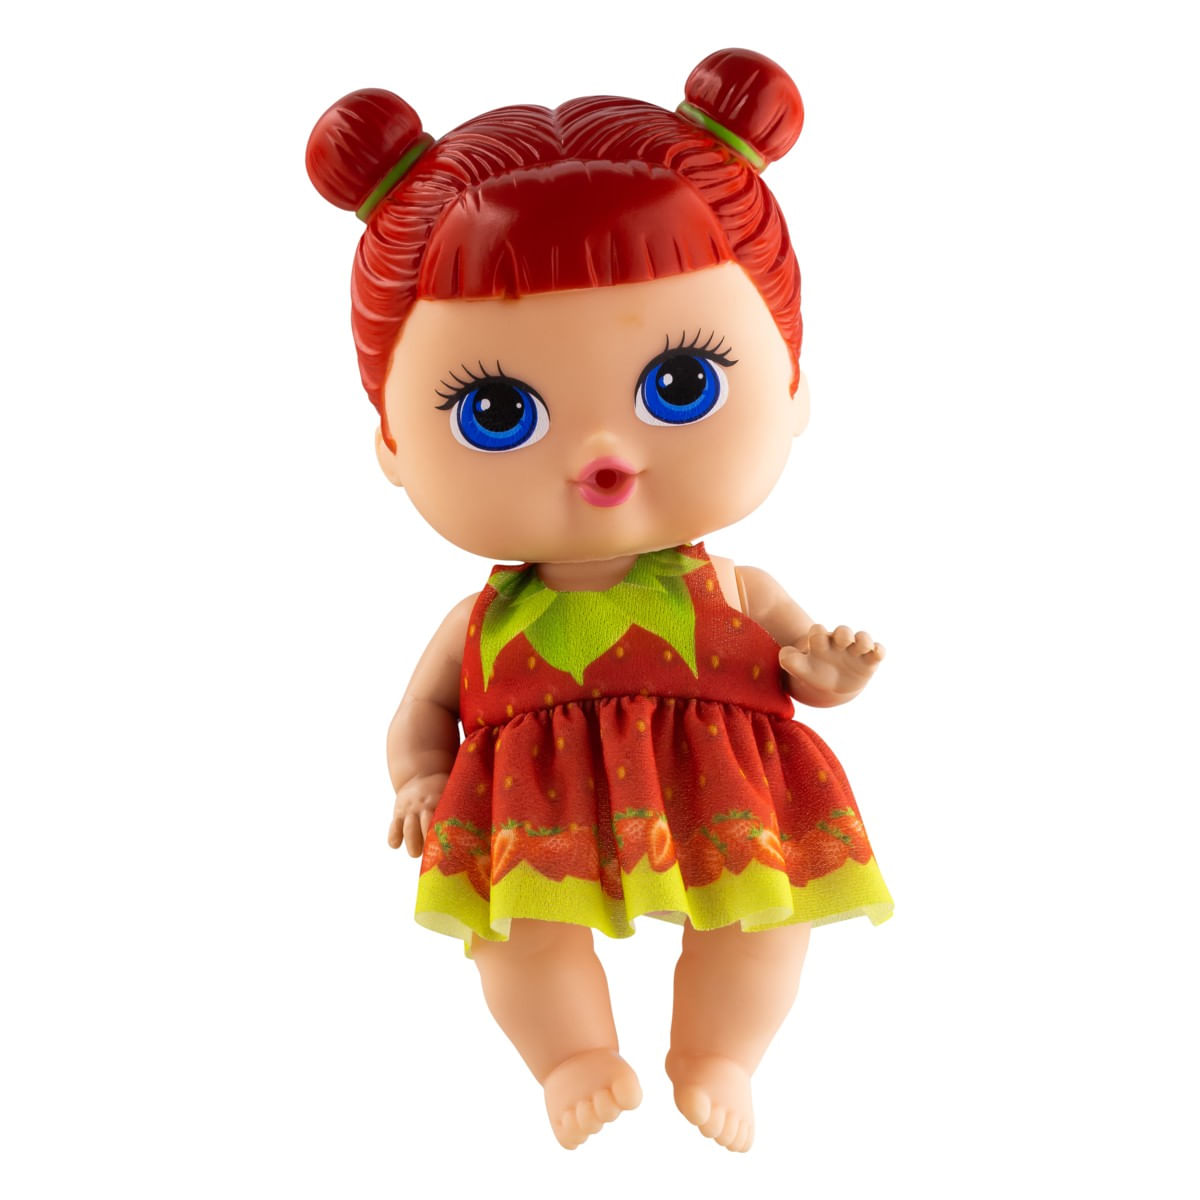 Desenho de uma boneca menina e bolas de uma boneca nas dobradiças